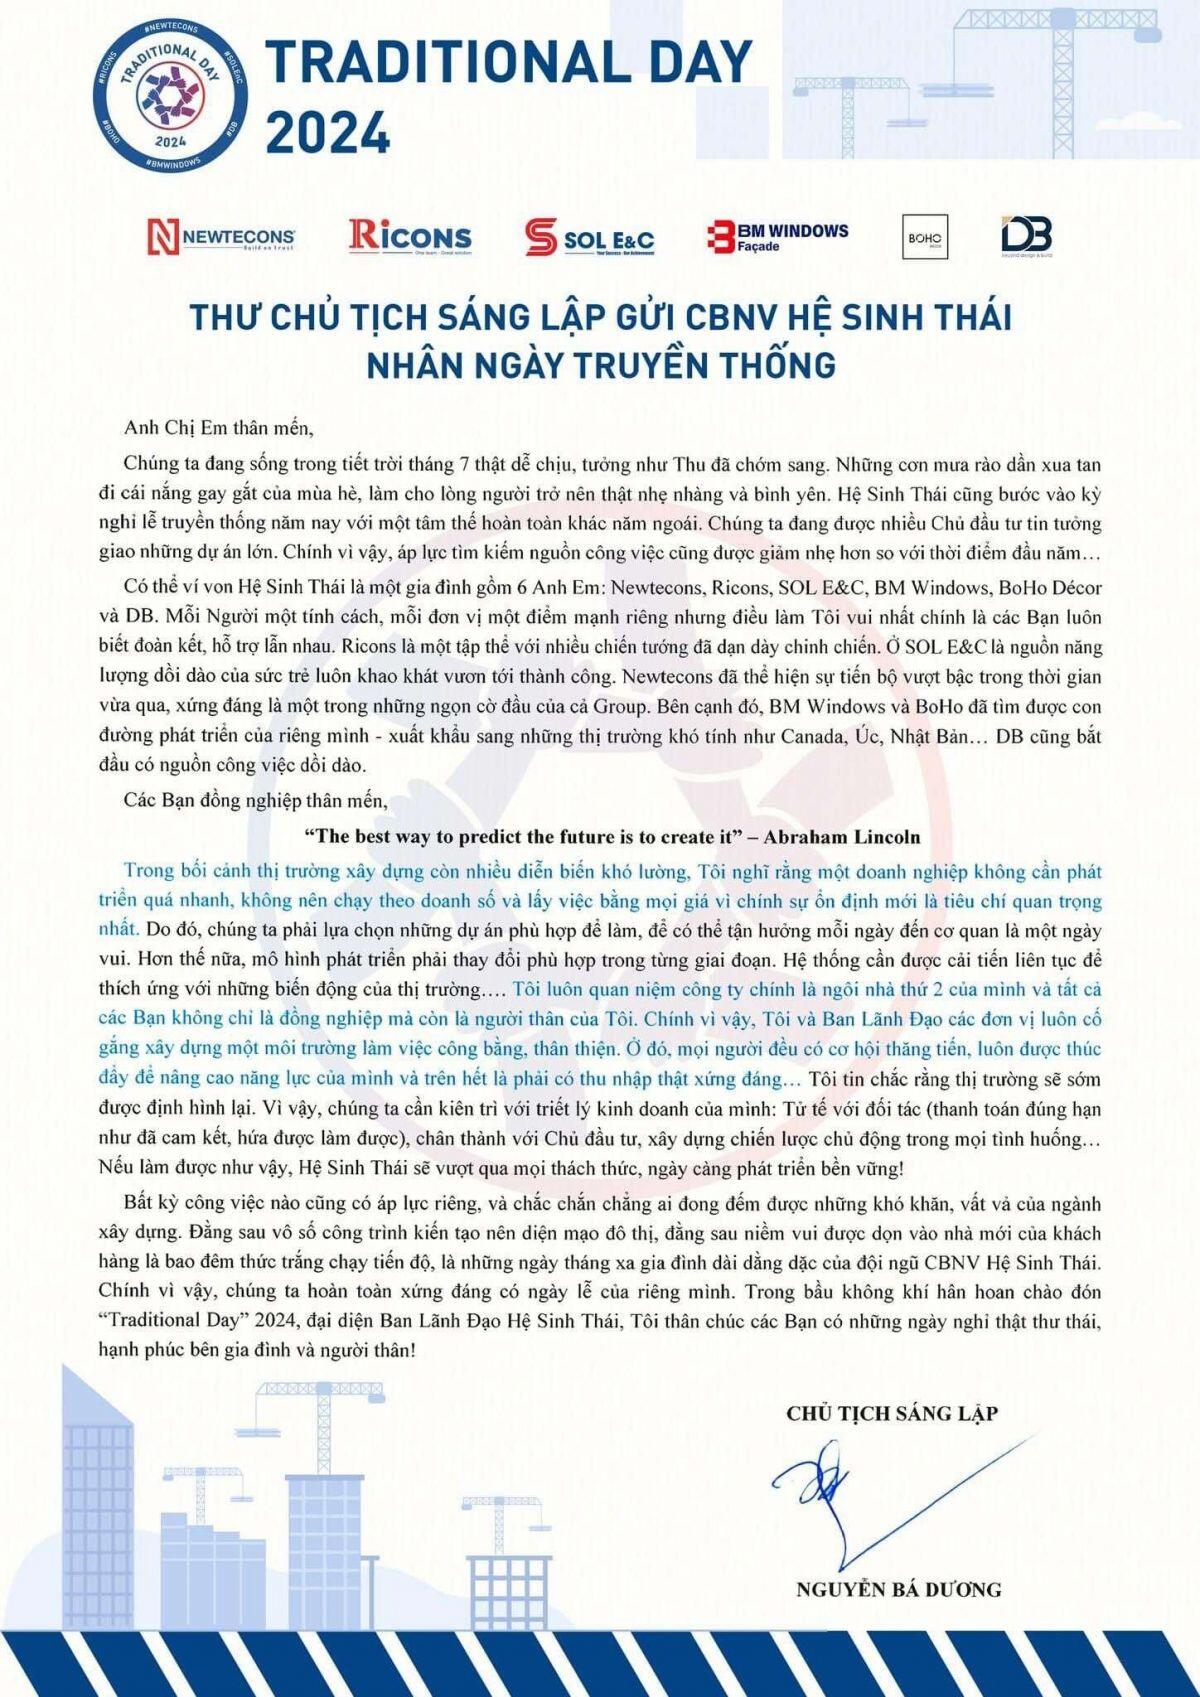 Ông Nguyễn Bá Dương viết thư gửi cán bộ nhân viên: Chân thành với chủ đầu tư, Tử tế với đối tác, nhân viên phải có thu nhập xứng đáng